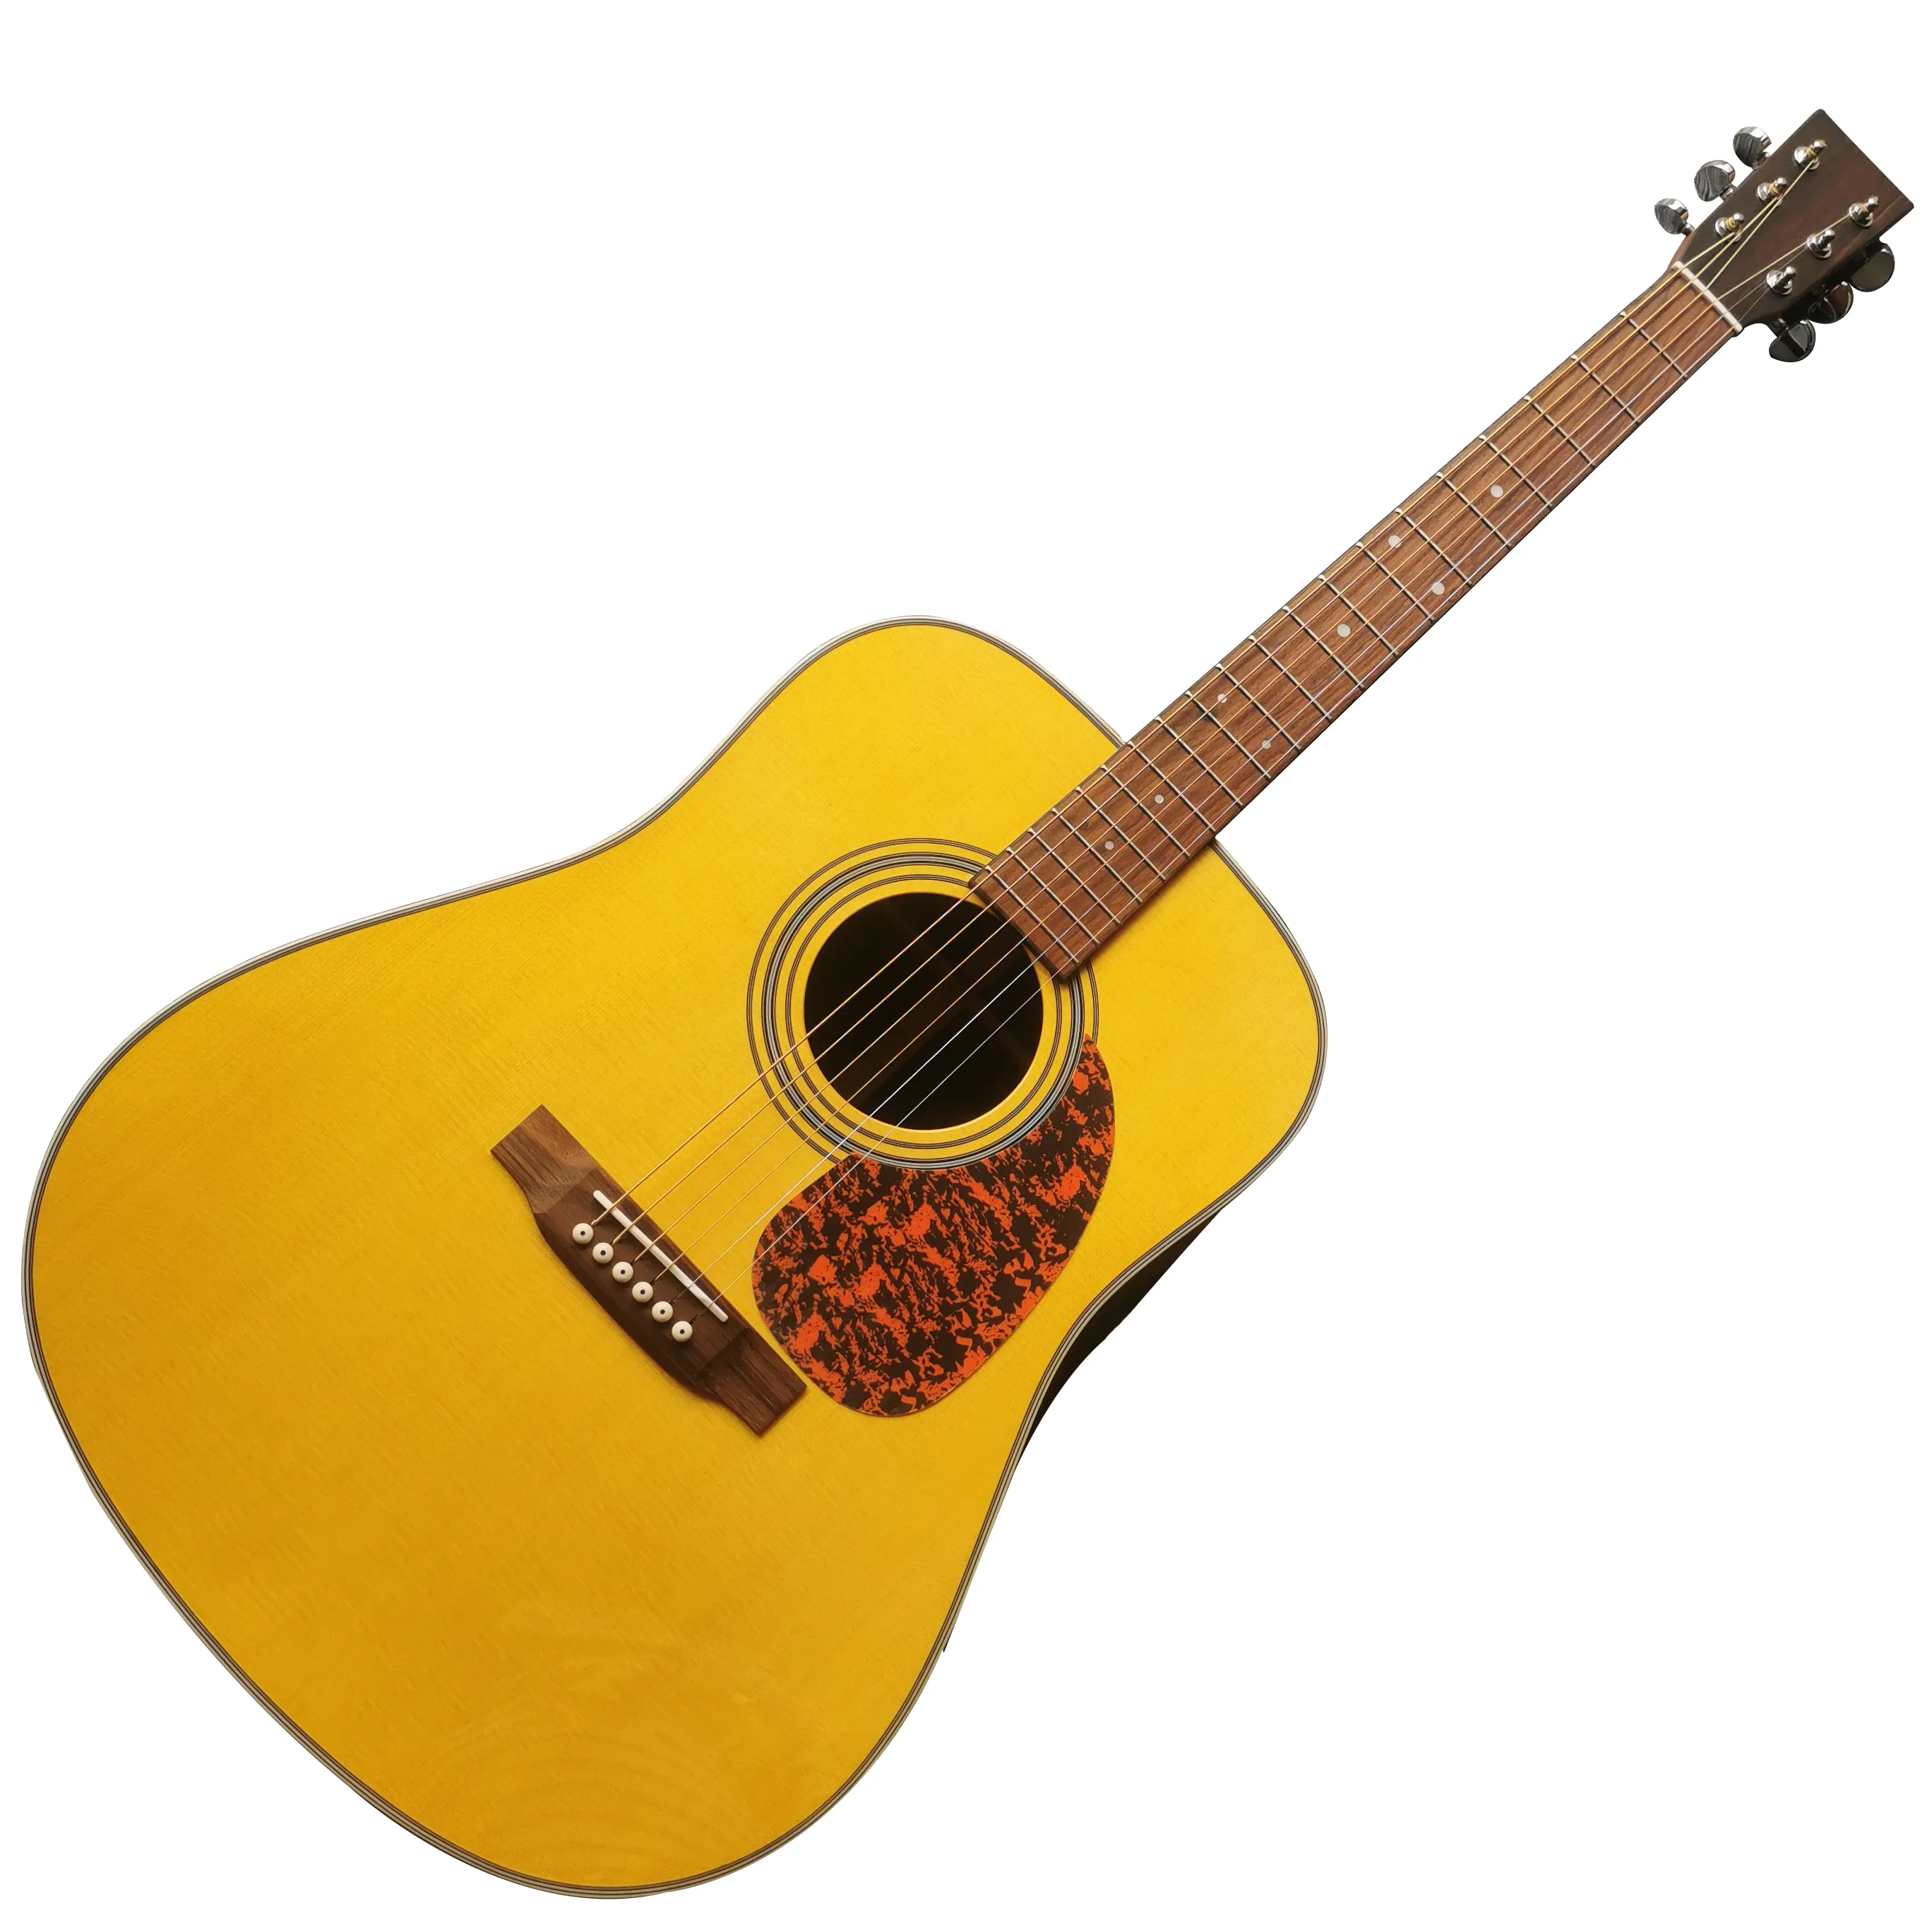 Wszystkie lite drewno 41 -calowe formy 6 powierzchniowa powierzchnia żółta farba powierzchnia akustyczna akustyczna gitara